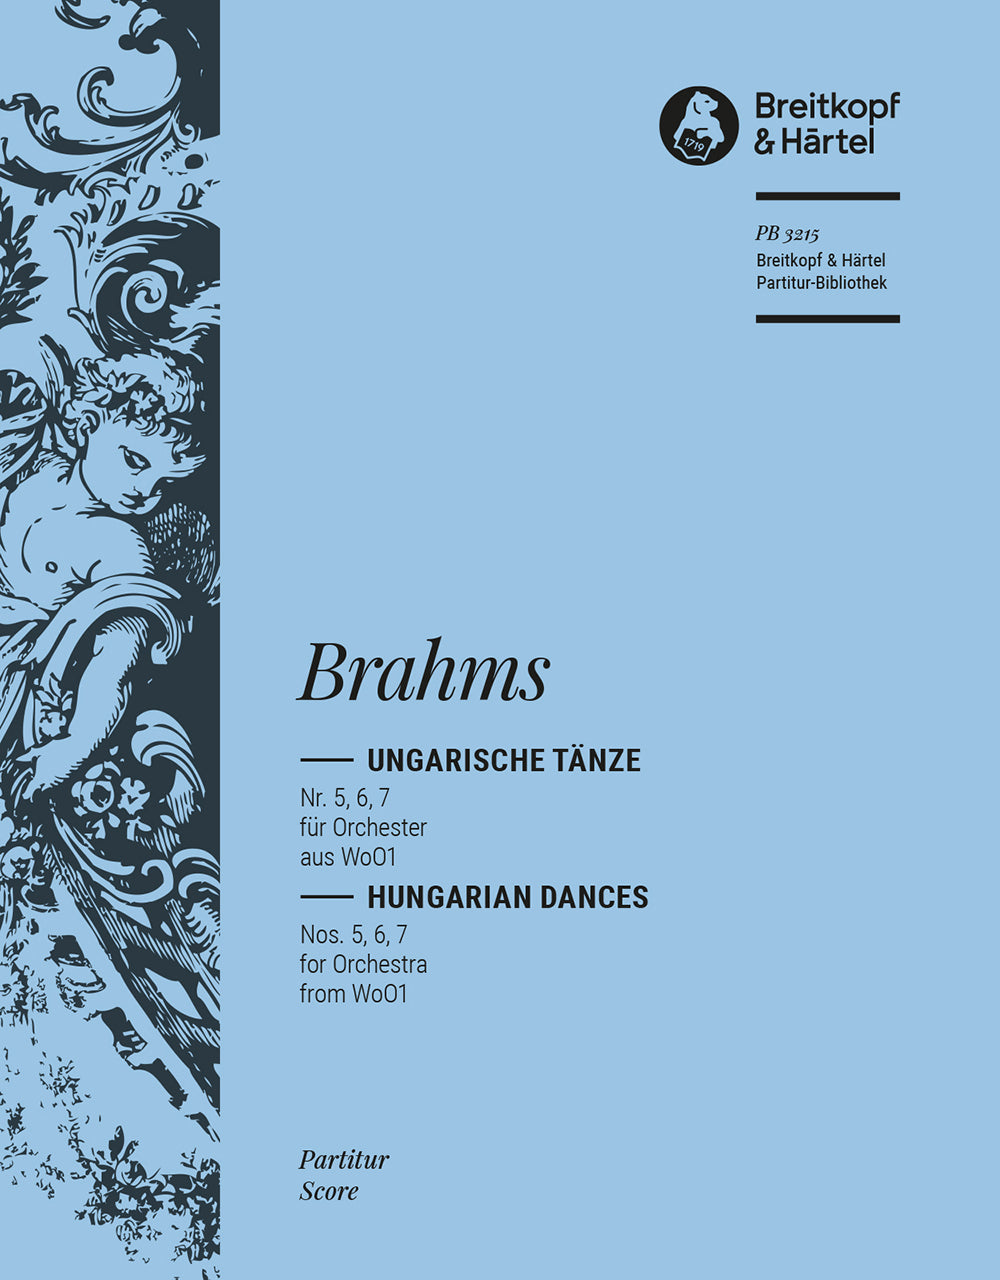 Brahms Hungarian Dances Nos. 5,6,7